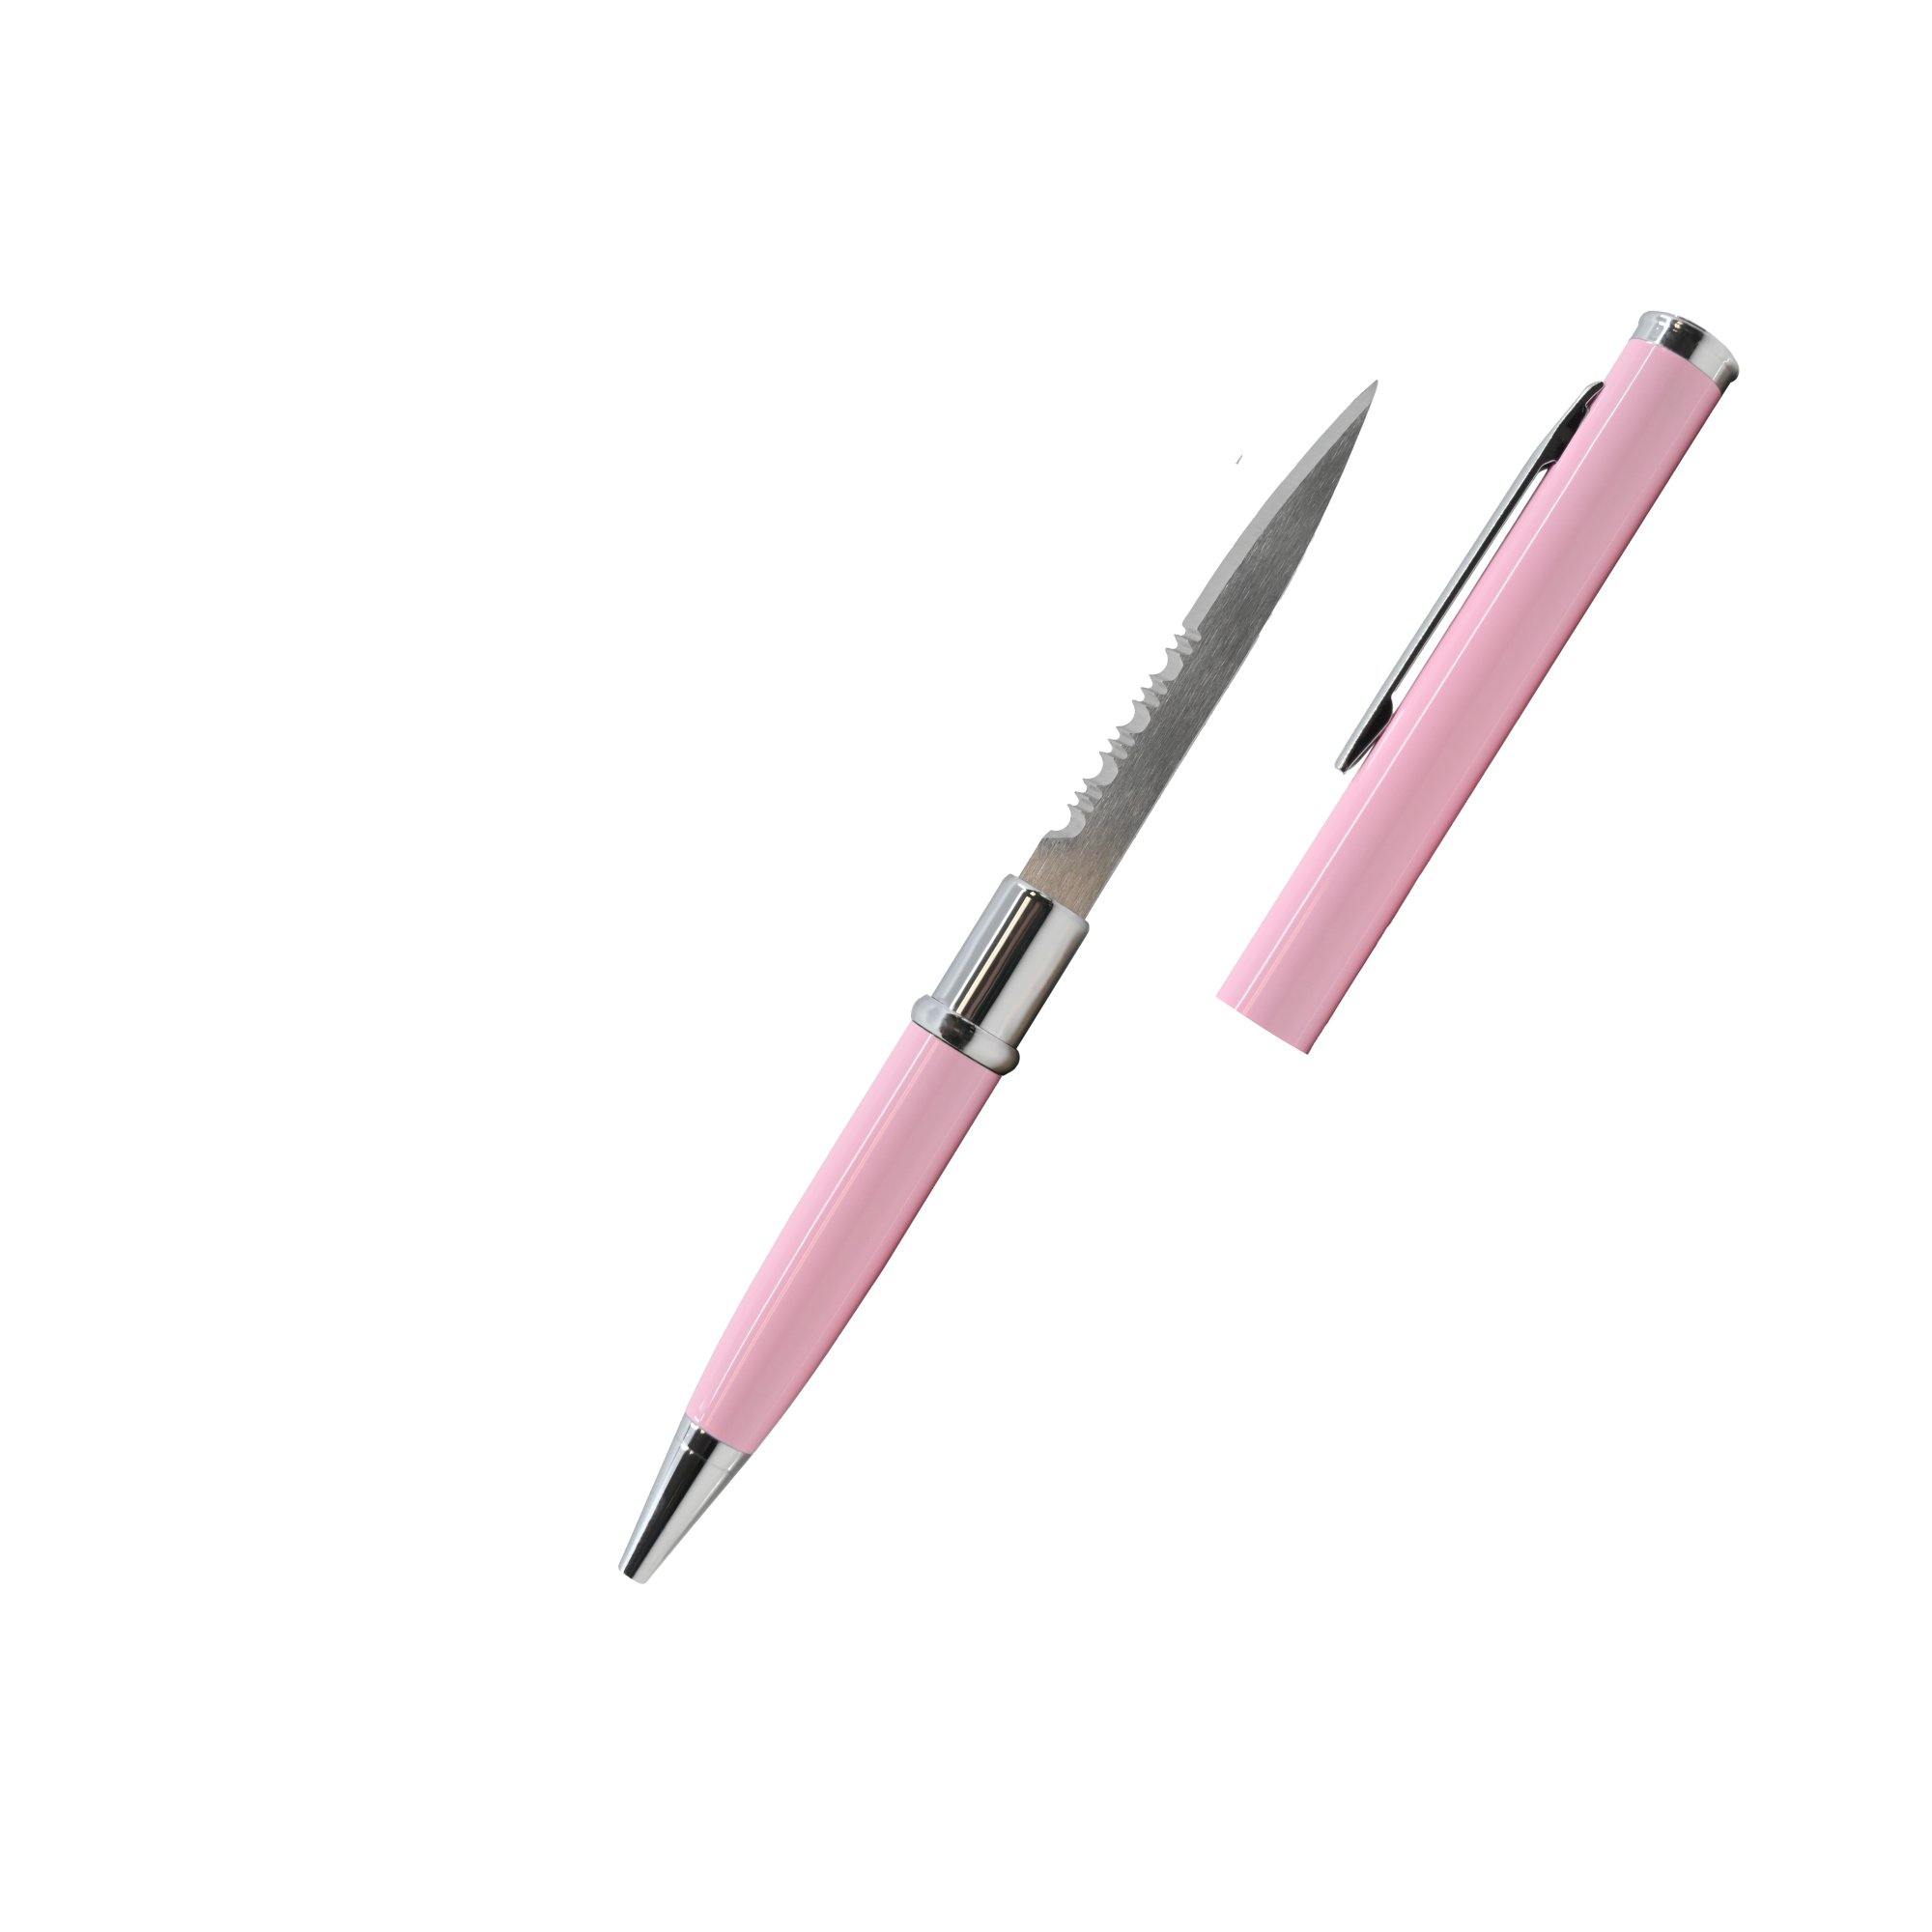 Pero se skrytým nožem - růžové